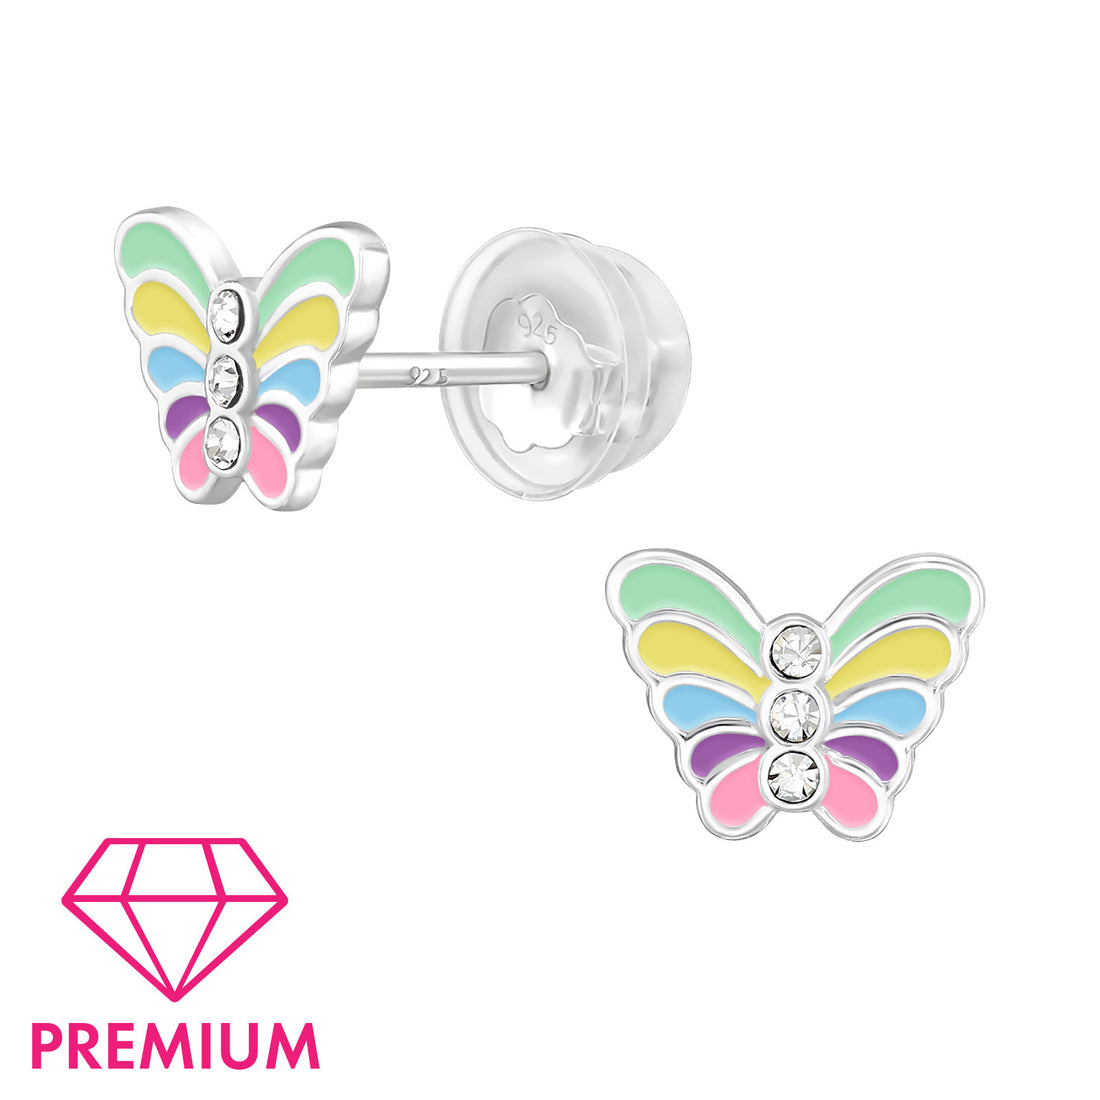 Zilveren kinderoorbellen Premium: Gekleurde vlindertjes